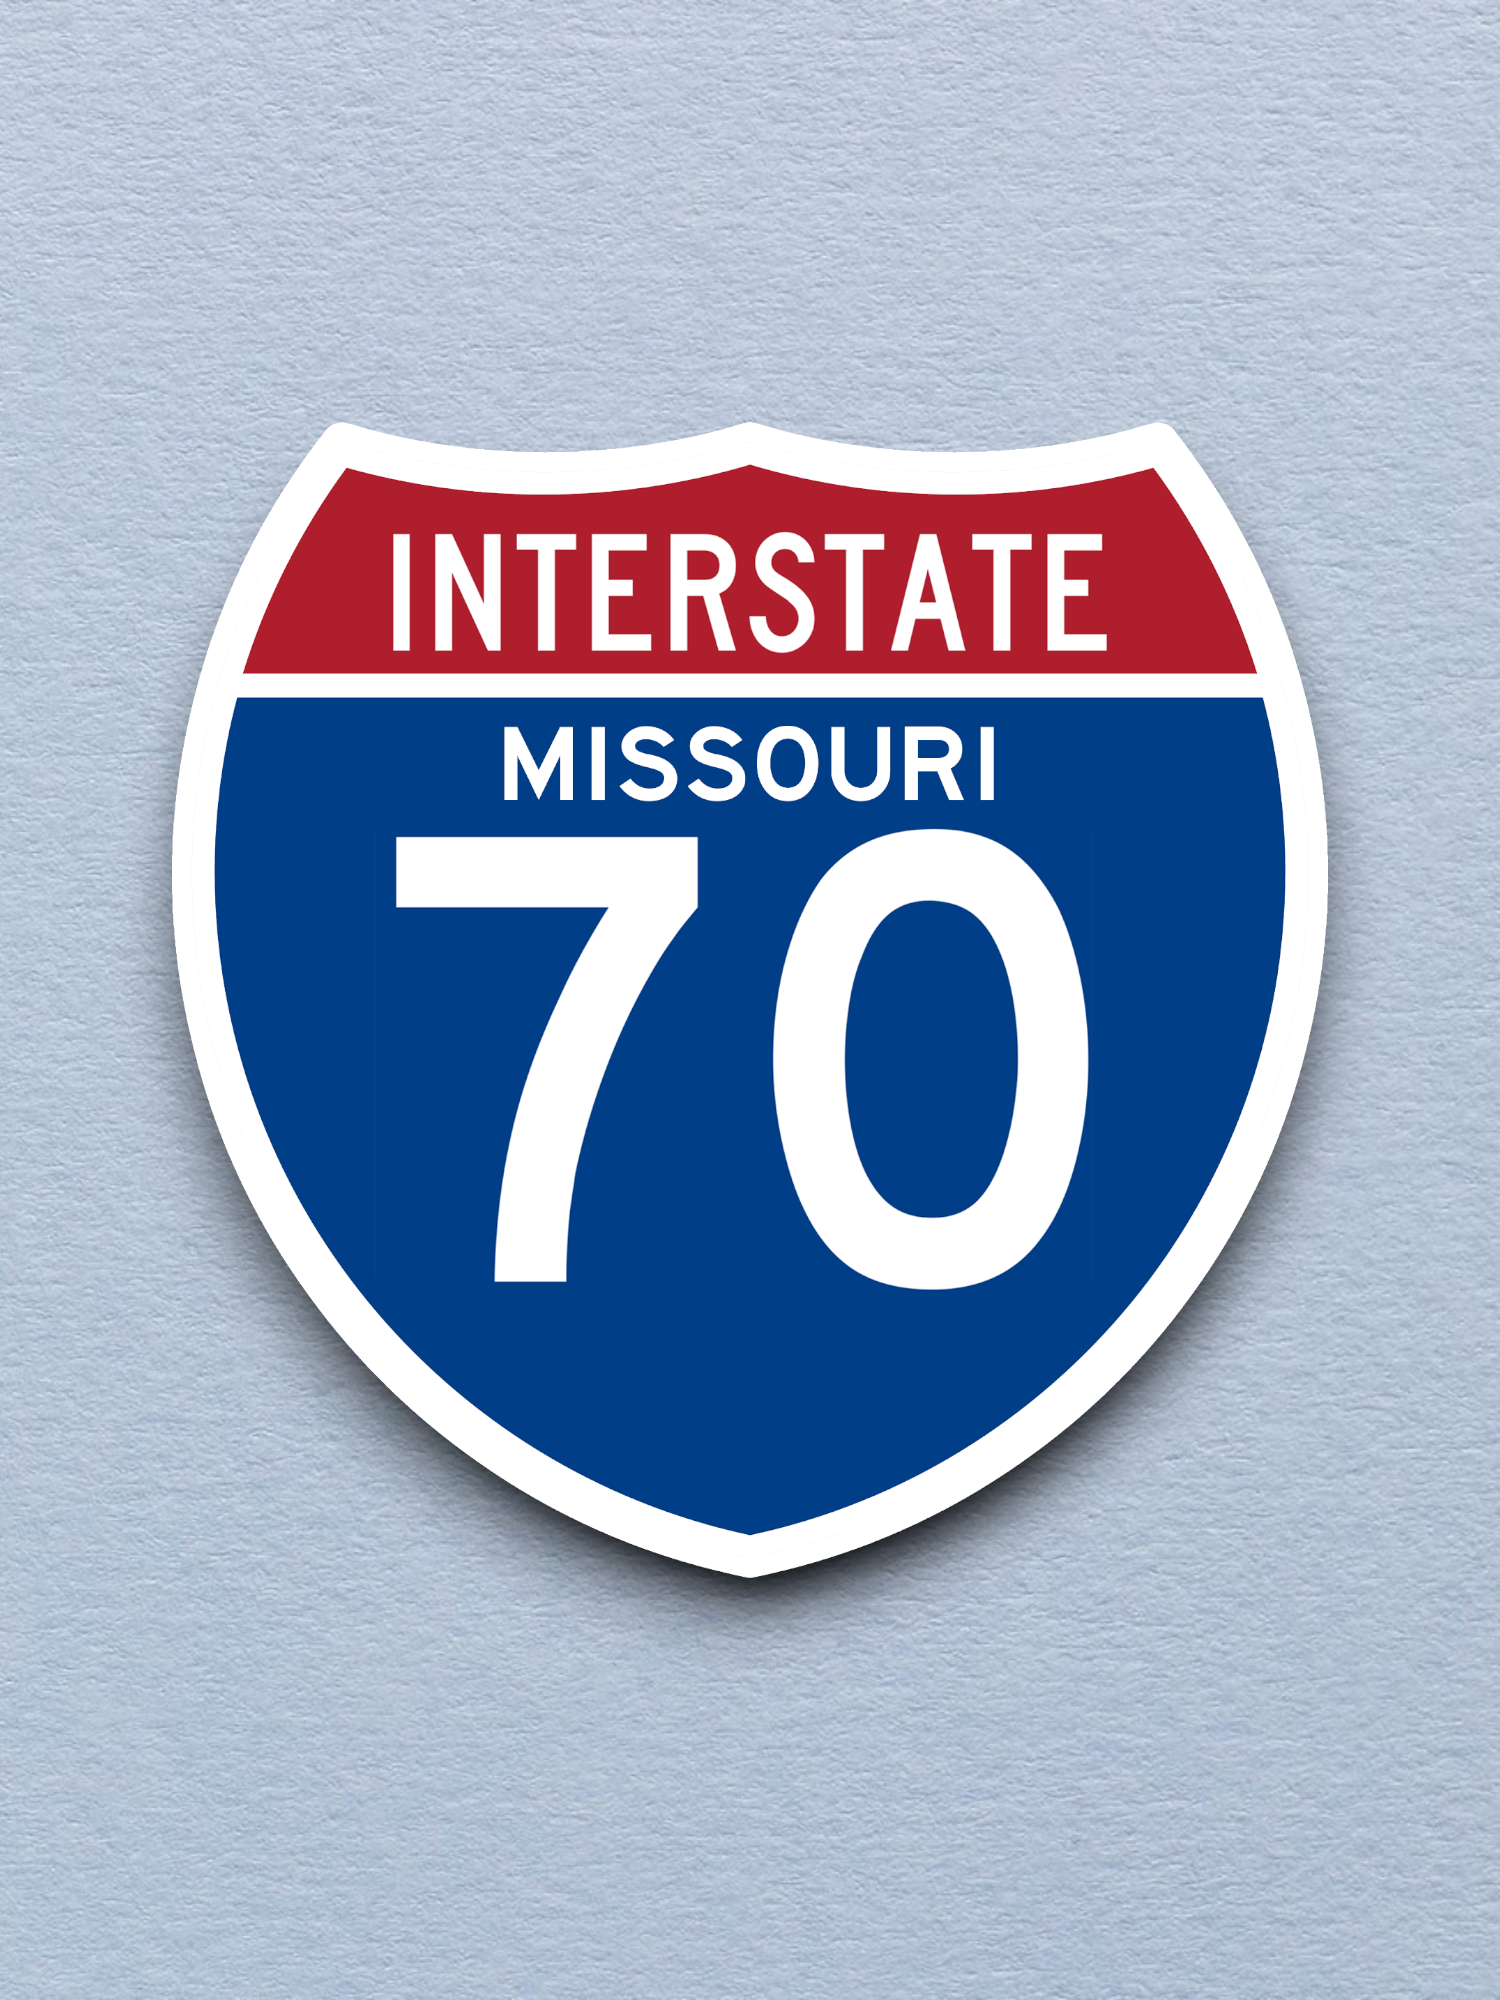 Interstate 70 - Missouri - Road Sign Sticker